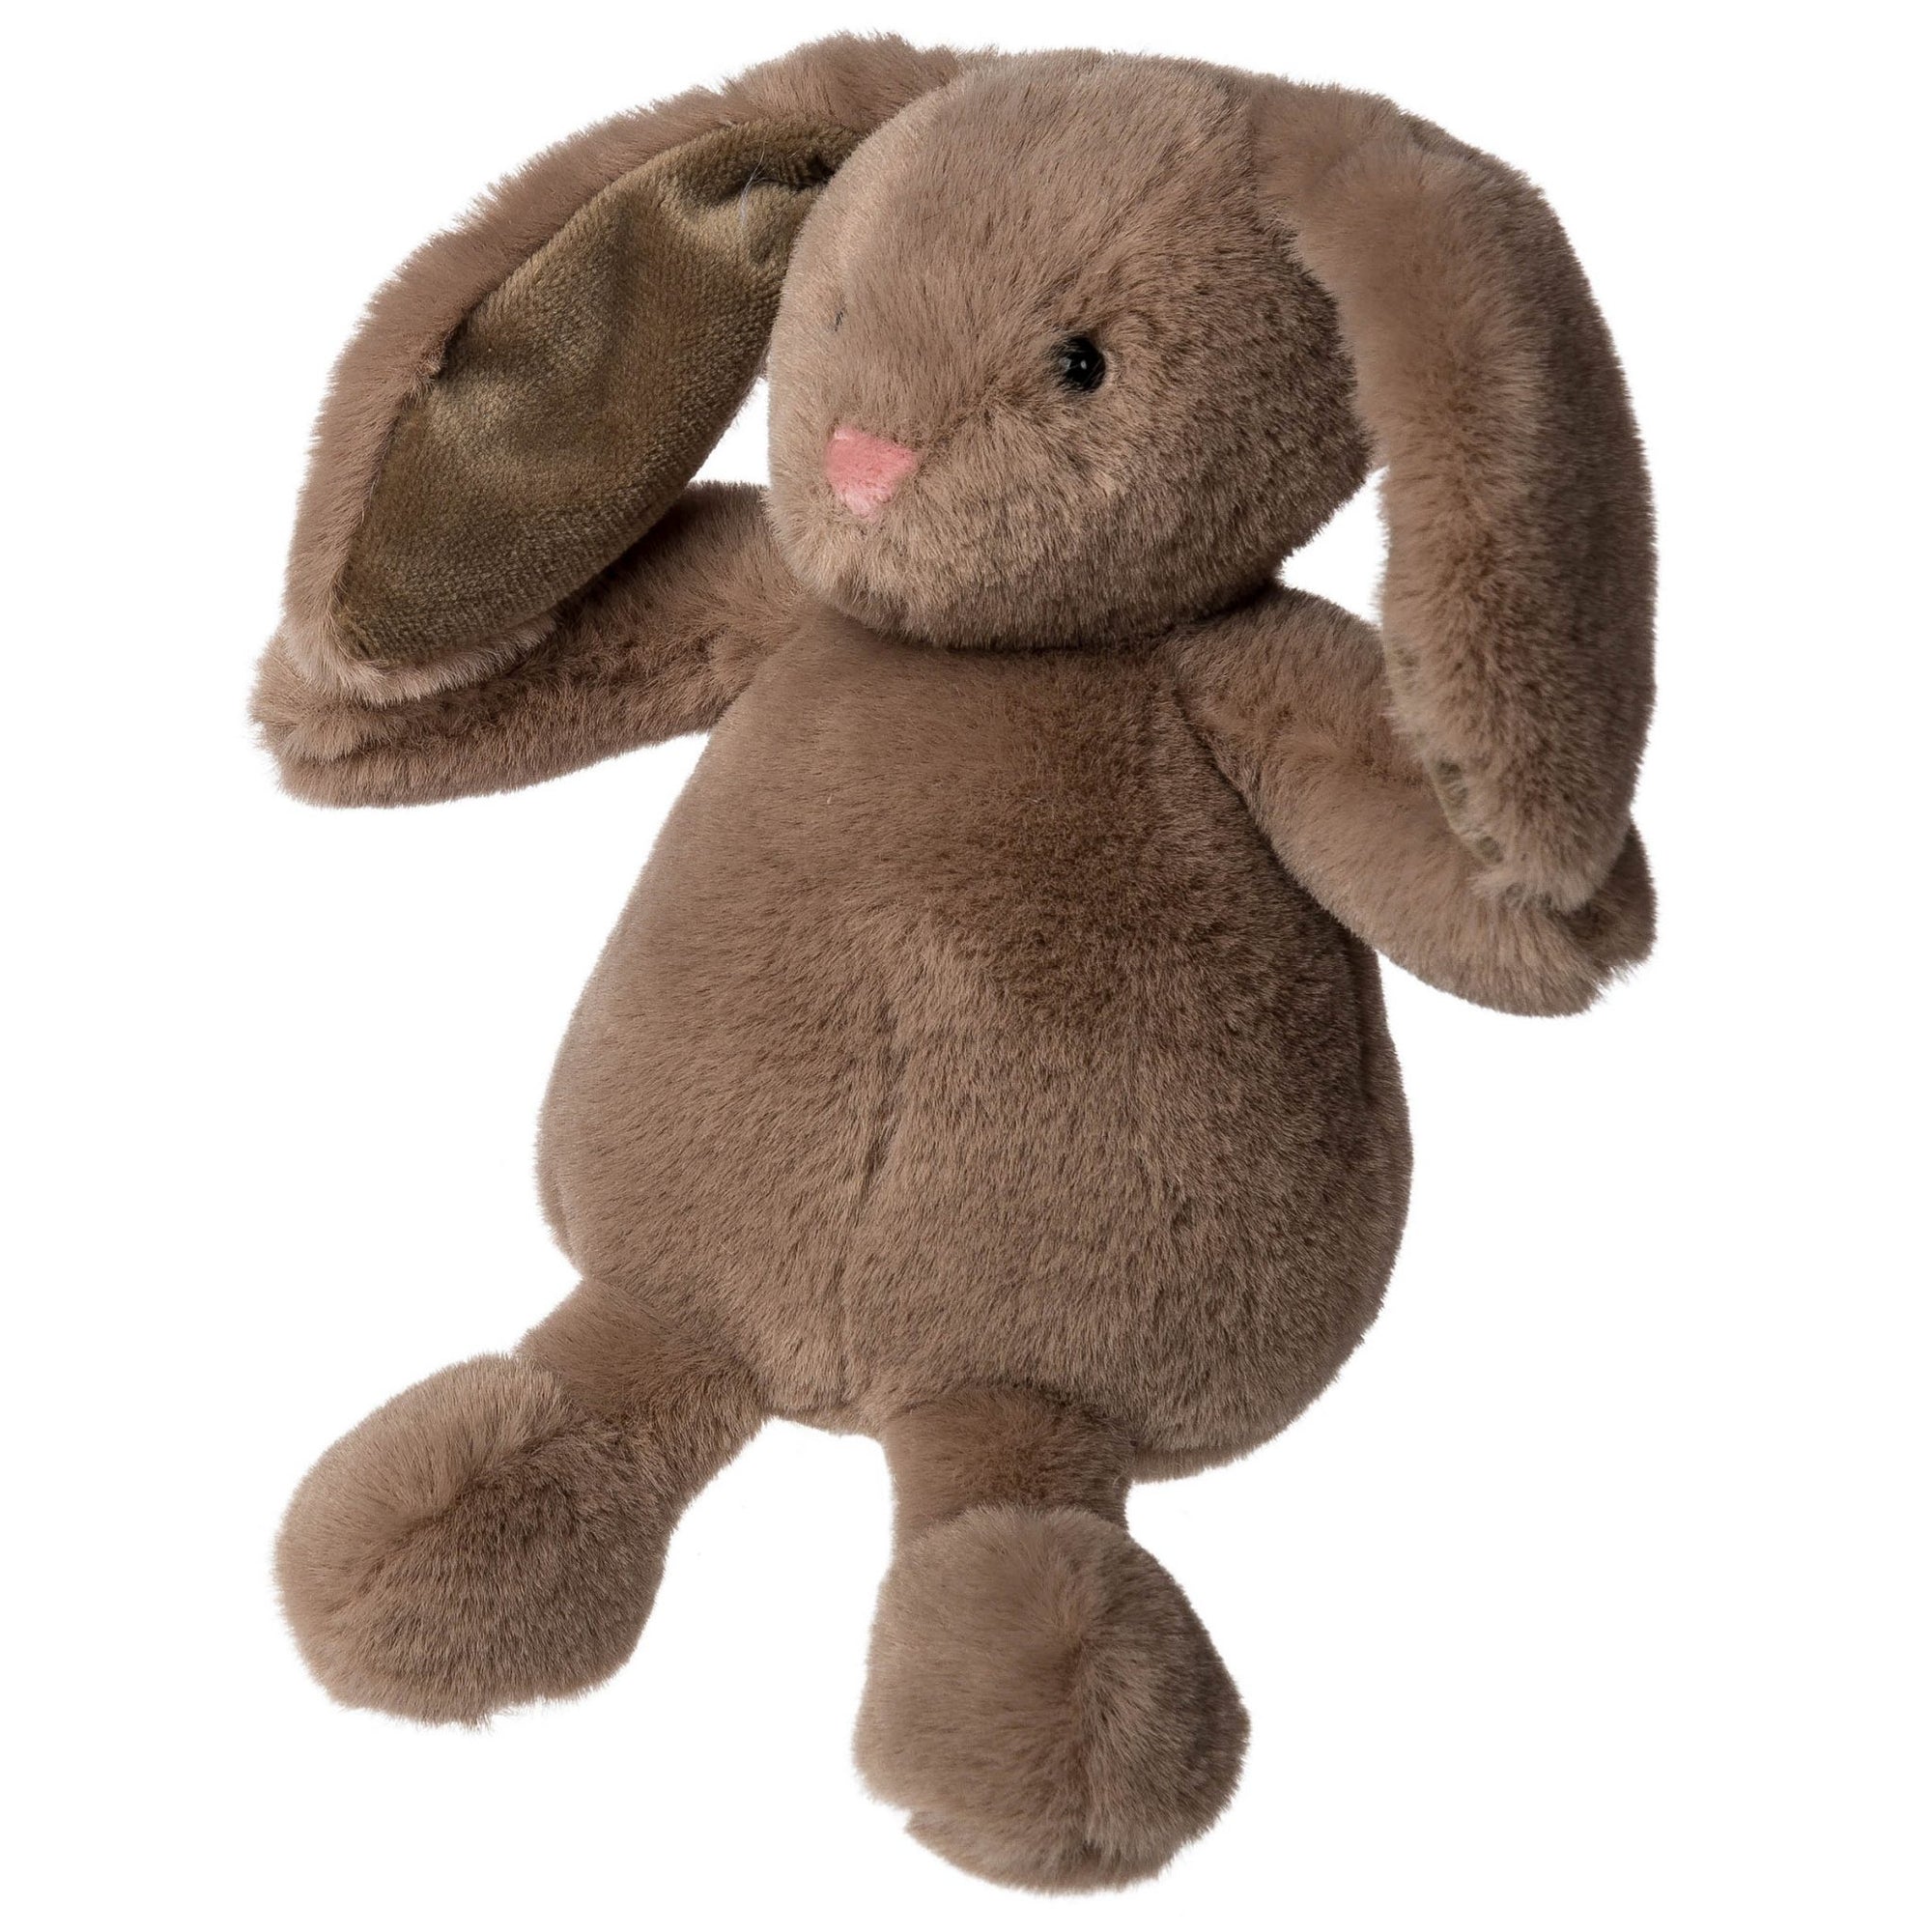 Chiparoo Bunny Small Toy